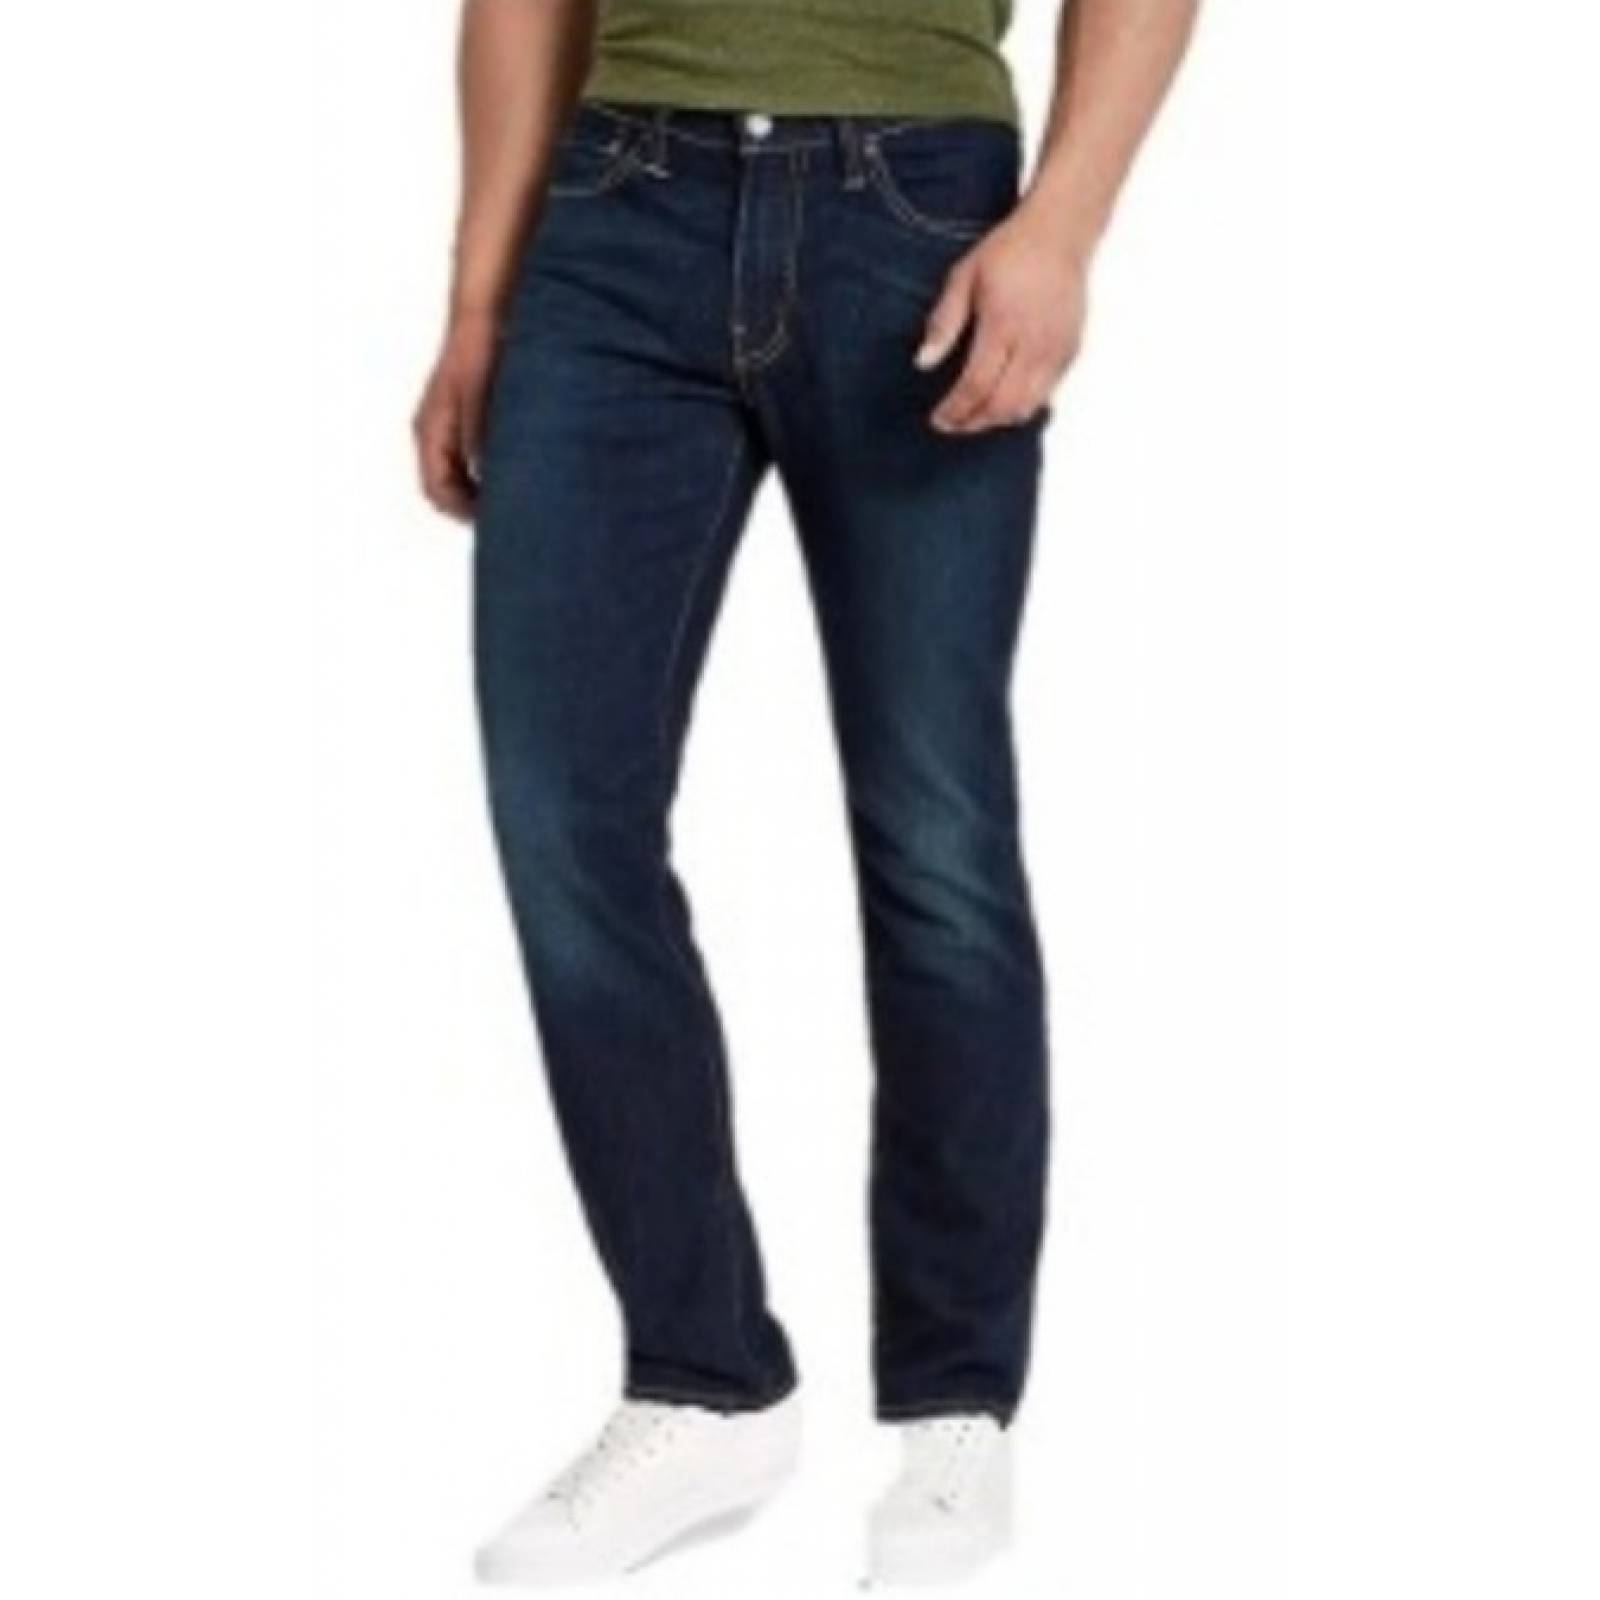 Jeans Levis 511 Slim Fit 04511-3661